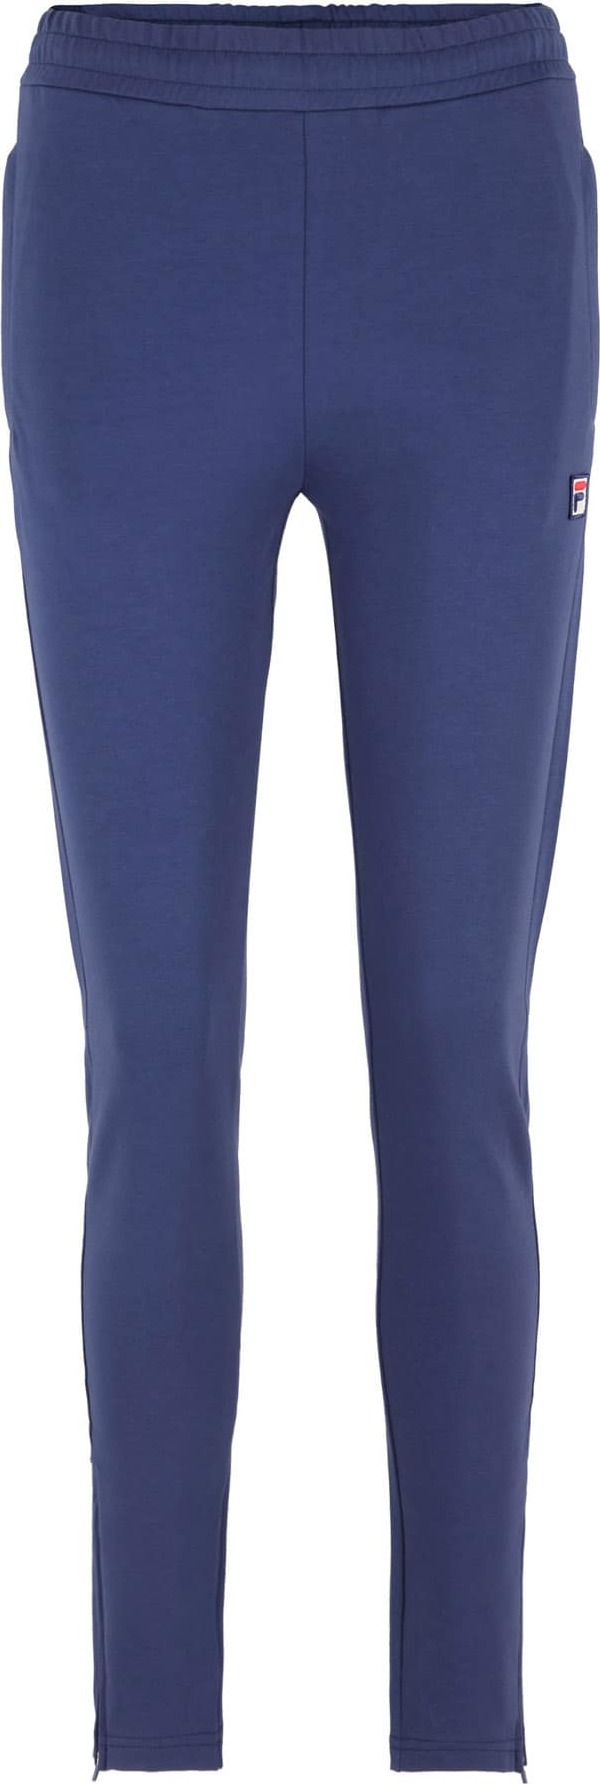 FILA Sportovní kalhoty 'BENIDORM' kobaltová modř / červená / bílá